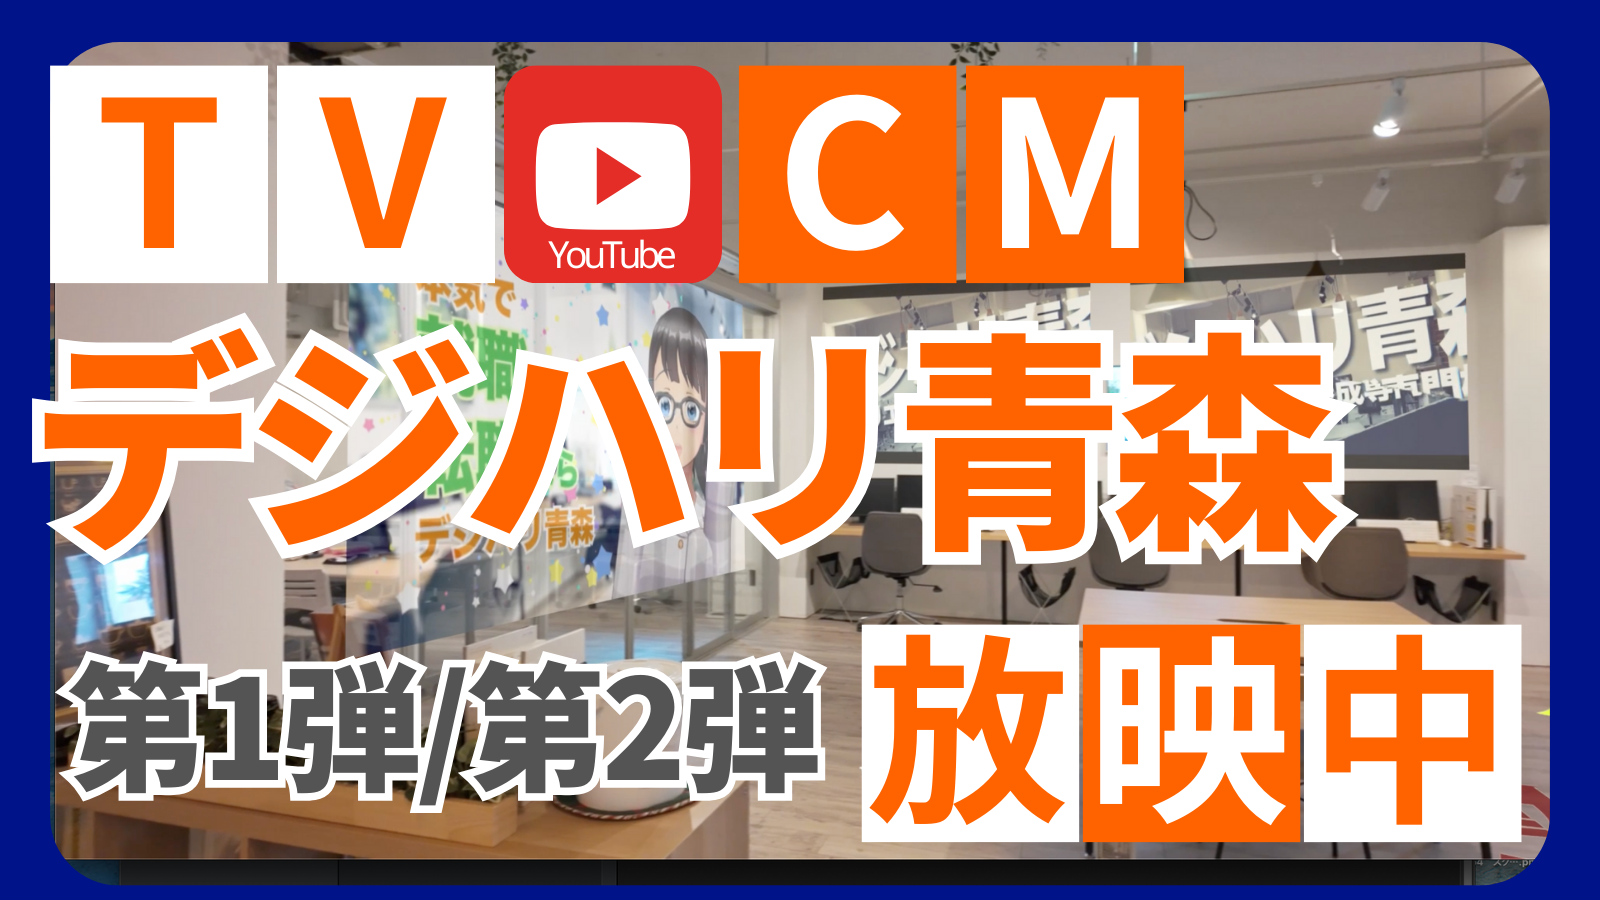 テレビCM・youtube広告放映中